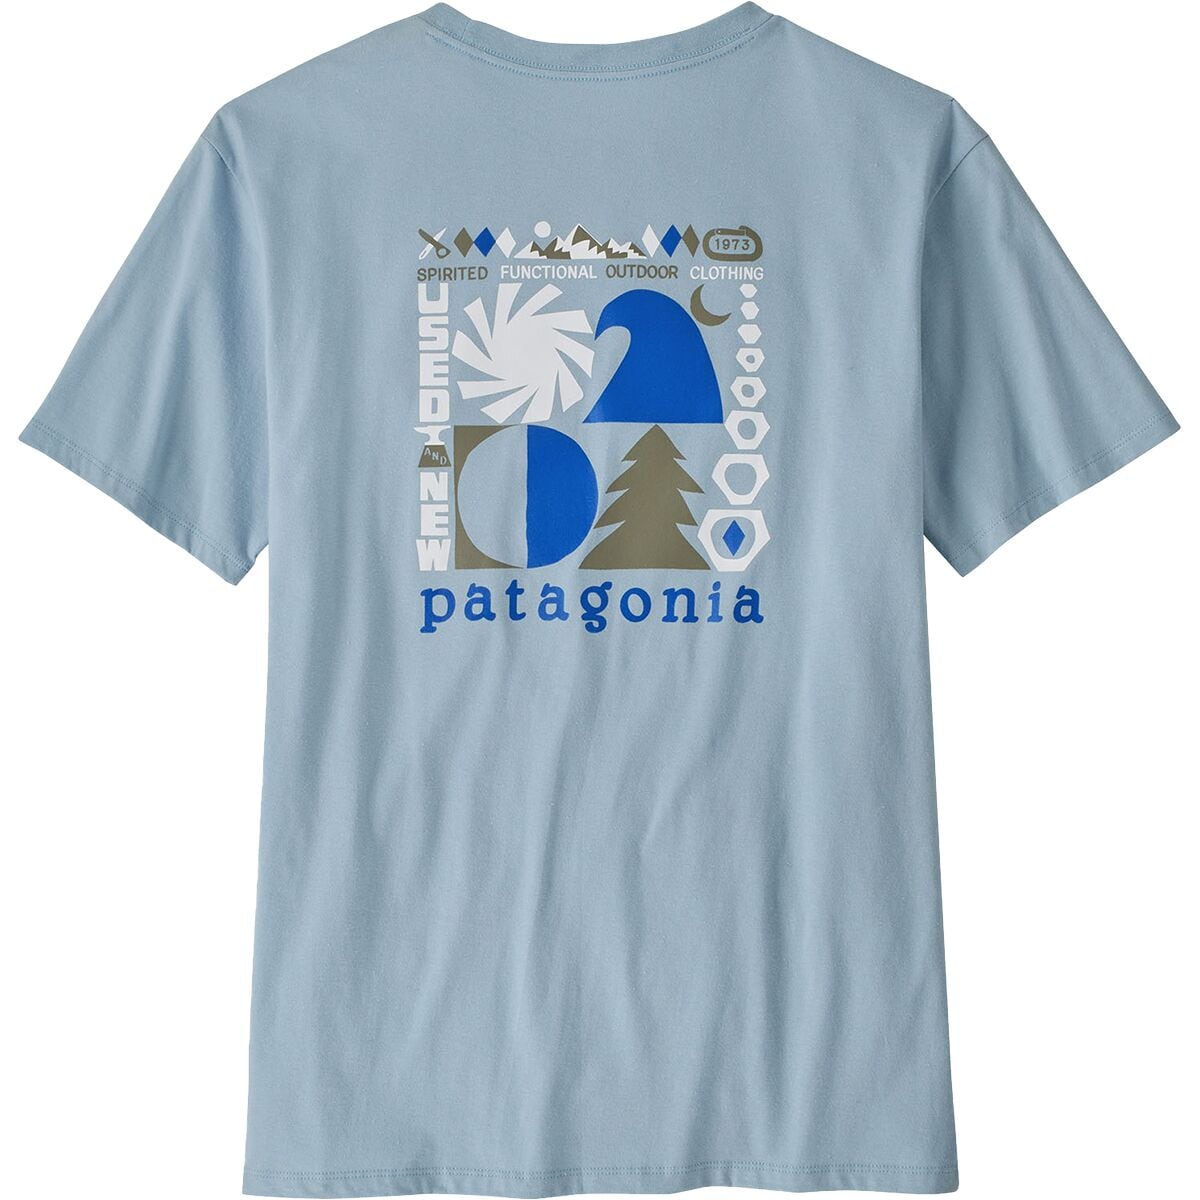 Patagonia Spirited Seasons Organic T-Shirt - Men's